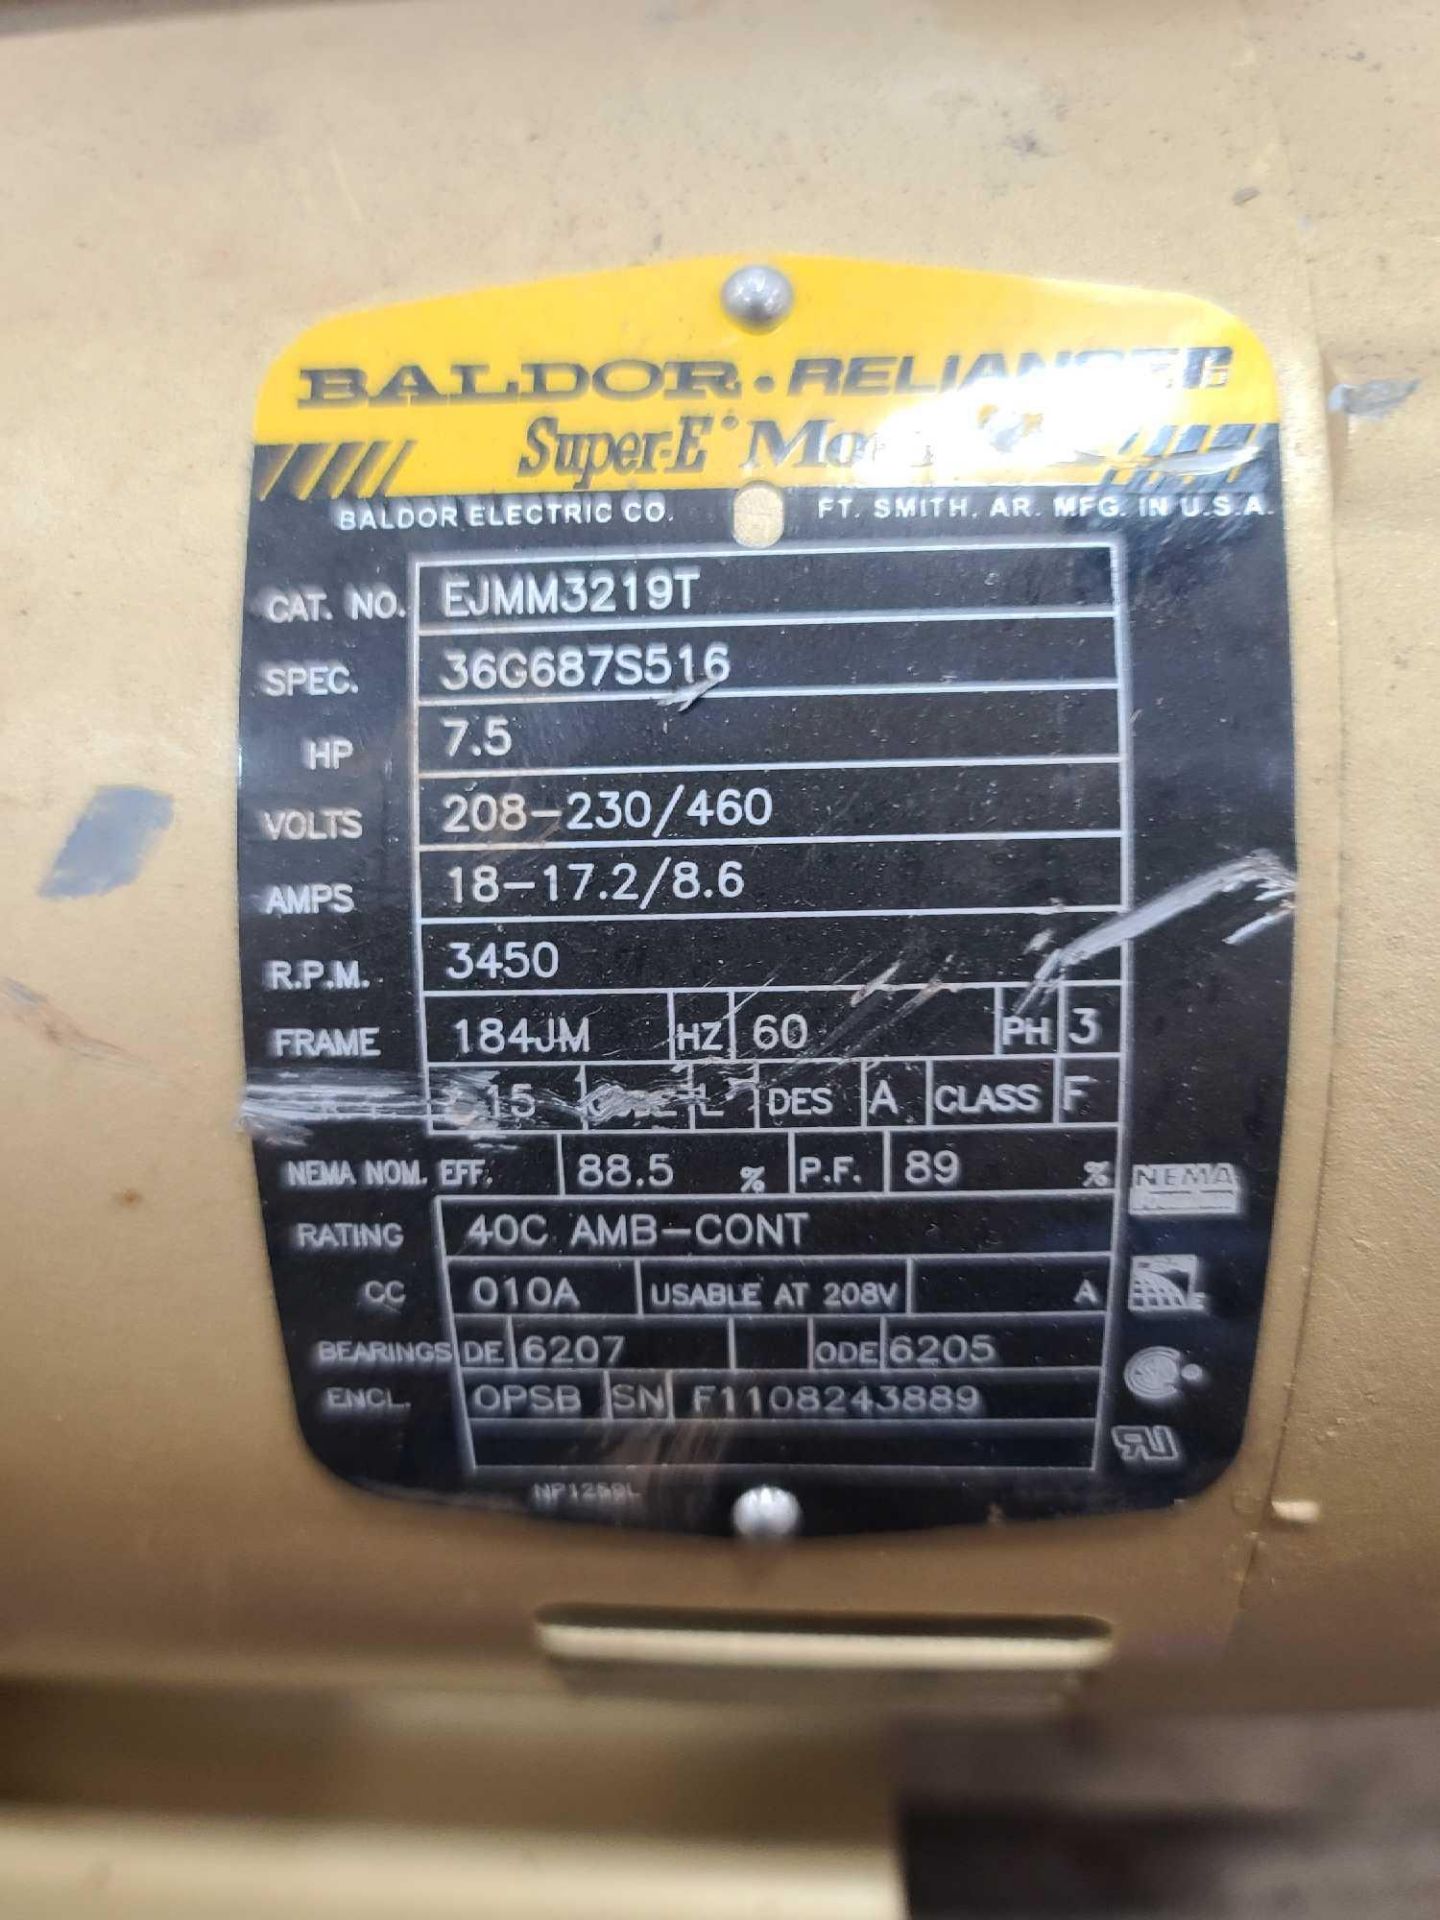 Belf and Gossett Pump with Baldor 7.5HP Motor - Image 5 of 5